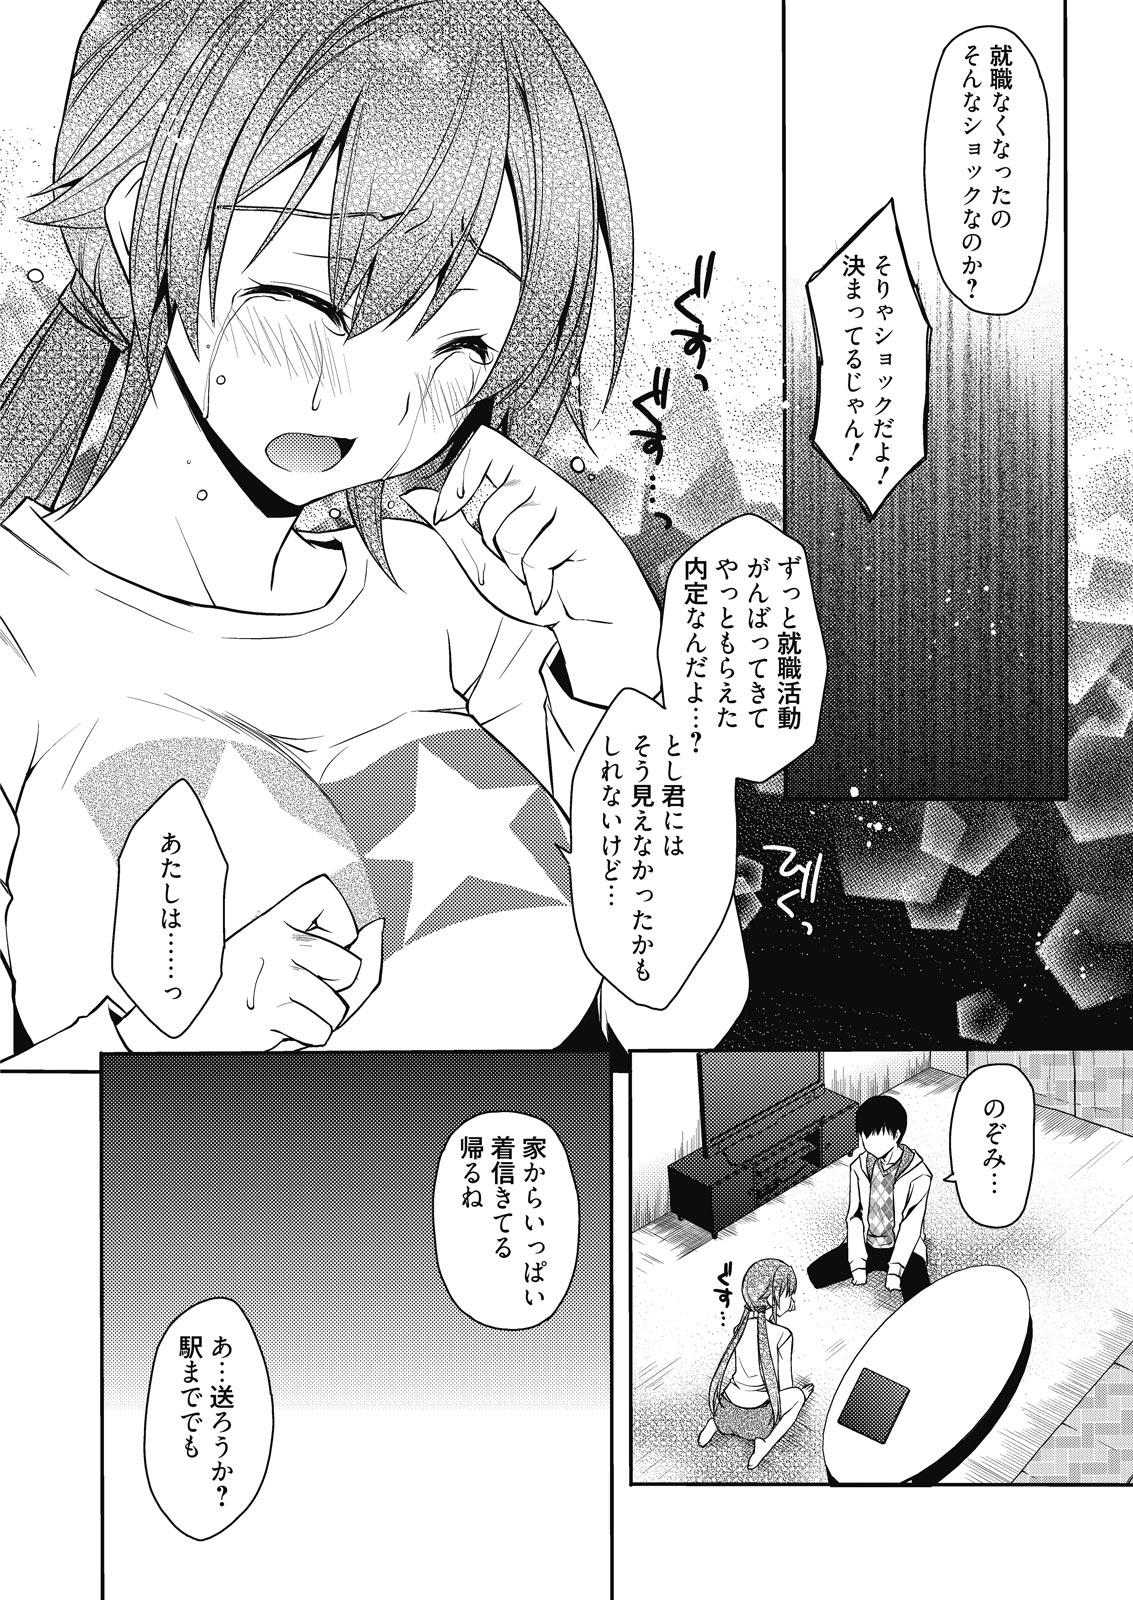 Web Manga Bangaichi Vol. 9 web 漫画ばんがいち Vol.9